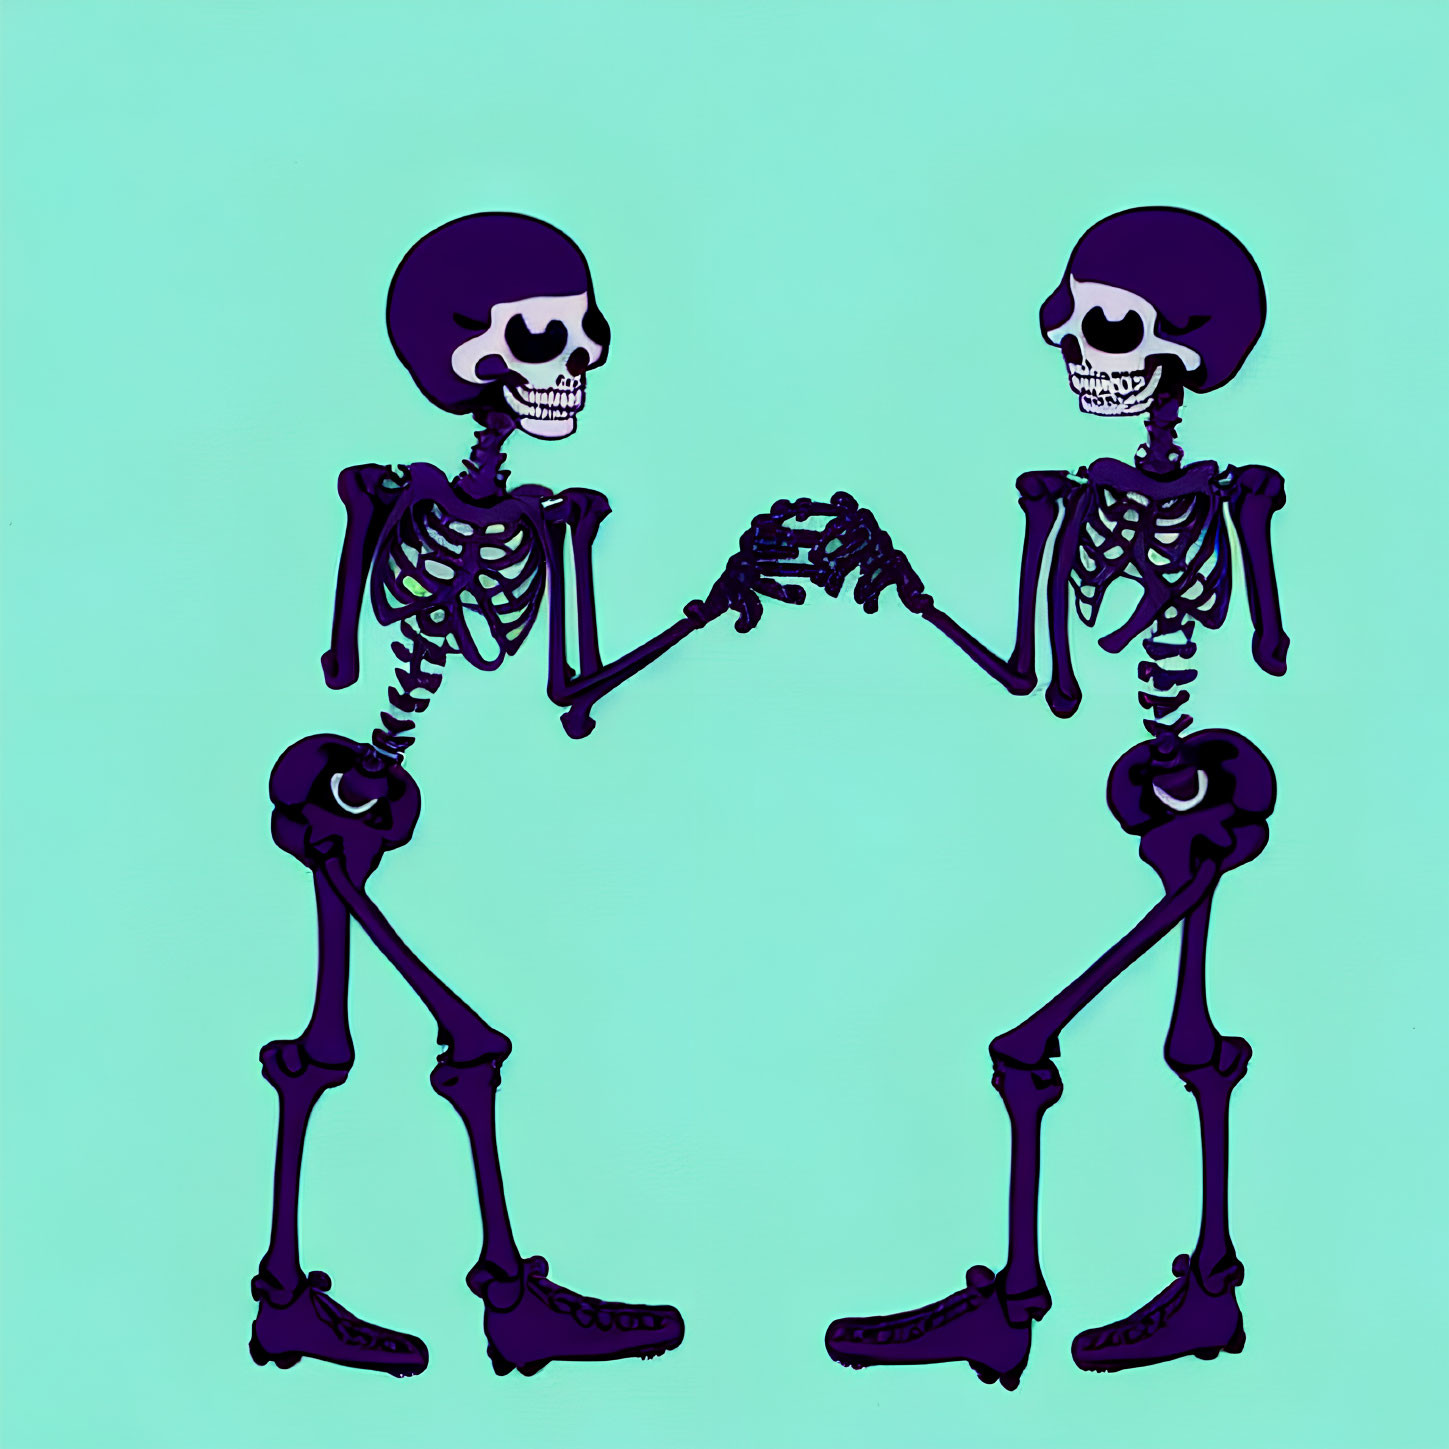 Skeletons holding hands on teal background